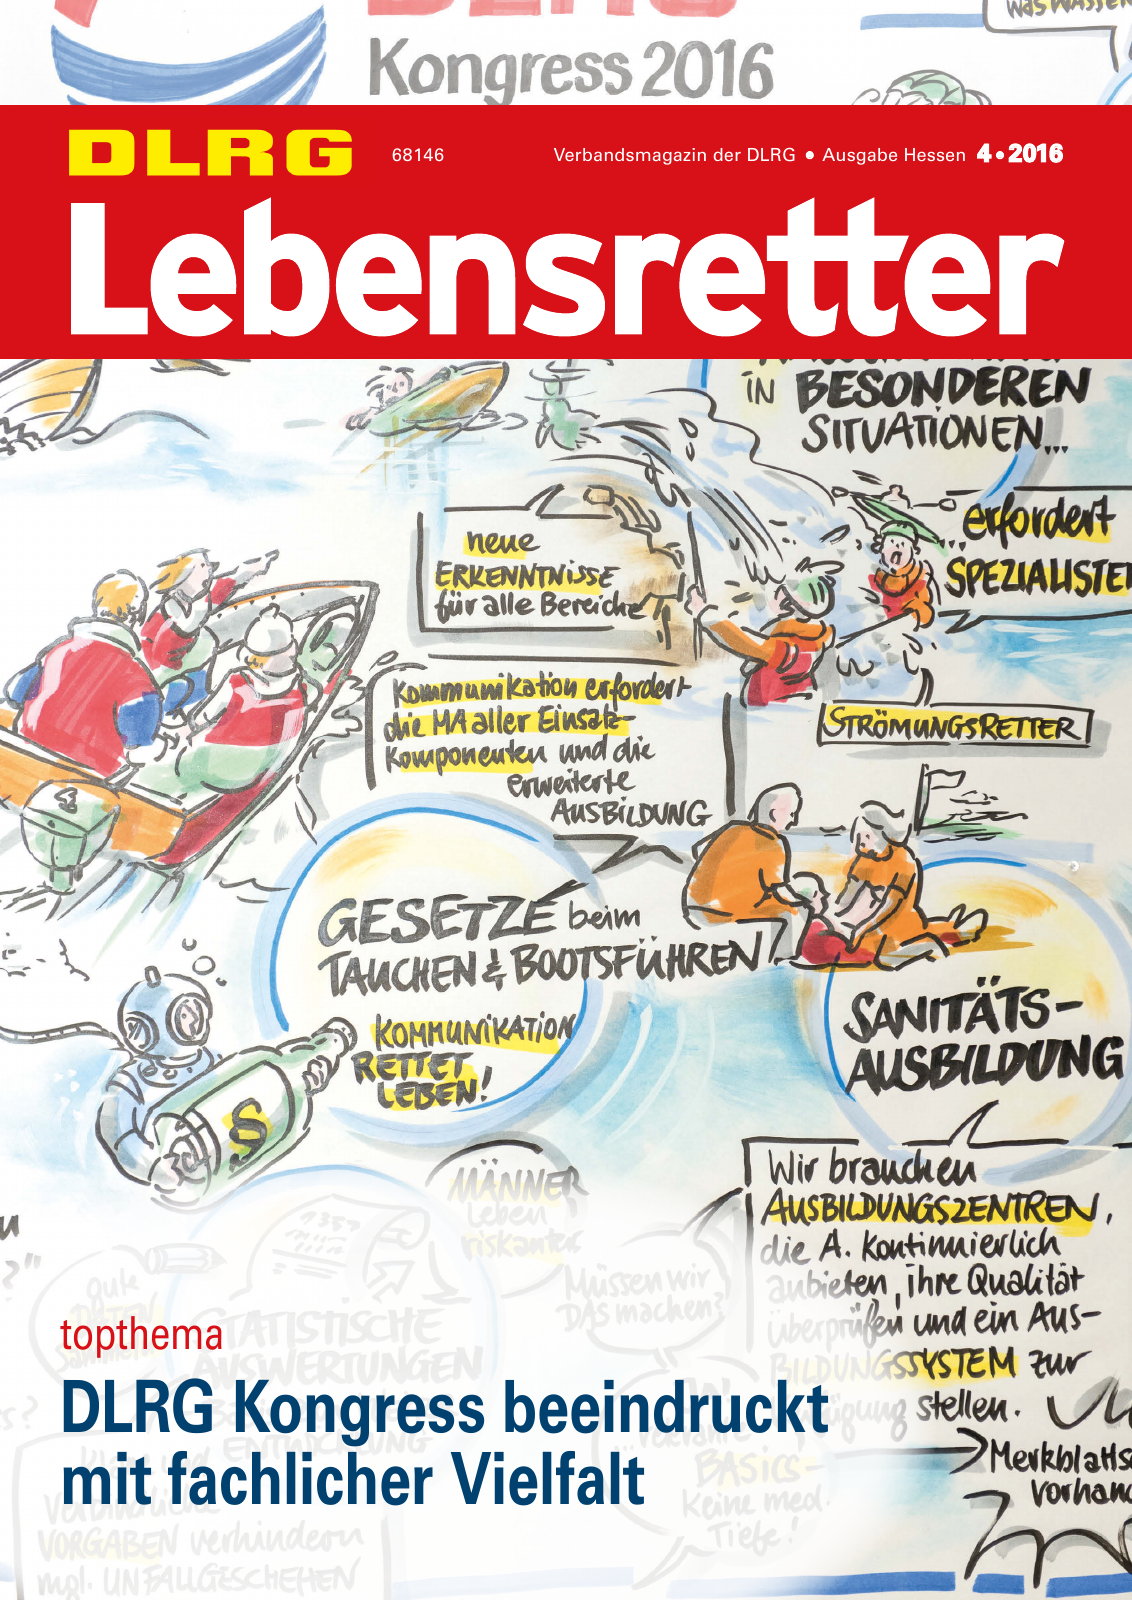 Vorschau Lebensretter 4/2016 - Regionalausgabe Hessen Seite 1